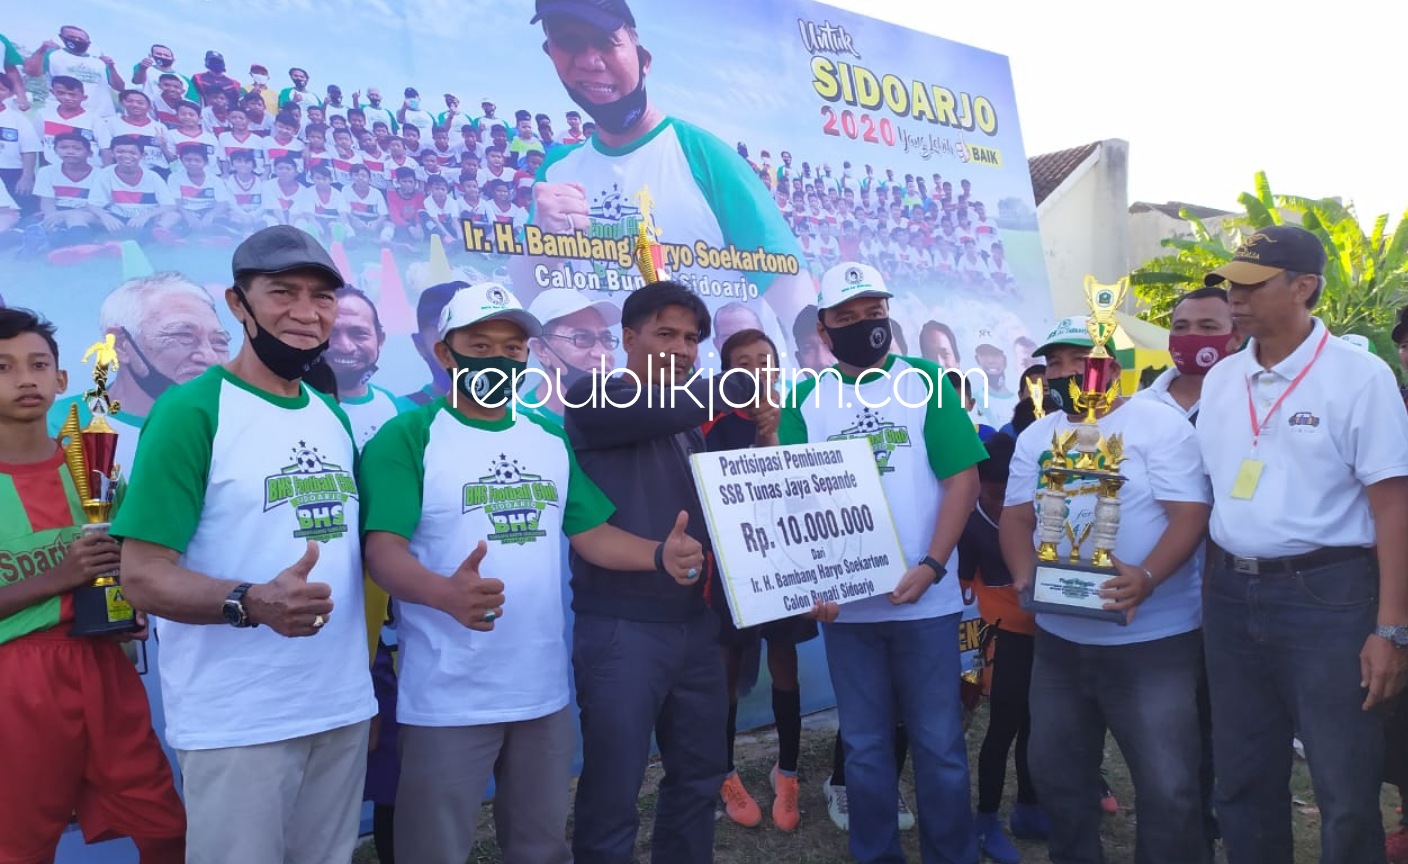 Komitmen Kembangkan Sepakbola Sidoarjo, BHS Bantu Rp 10 Juta Untuk SSB Tunas Jaya Sepande